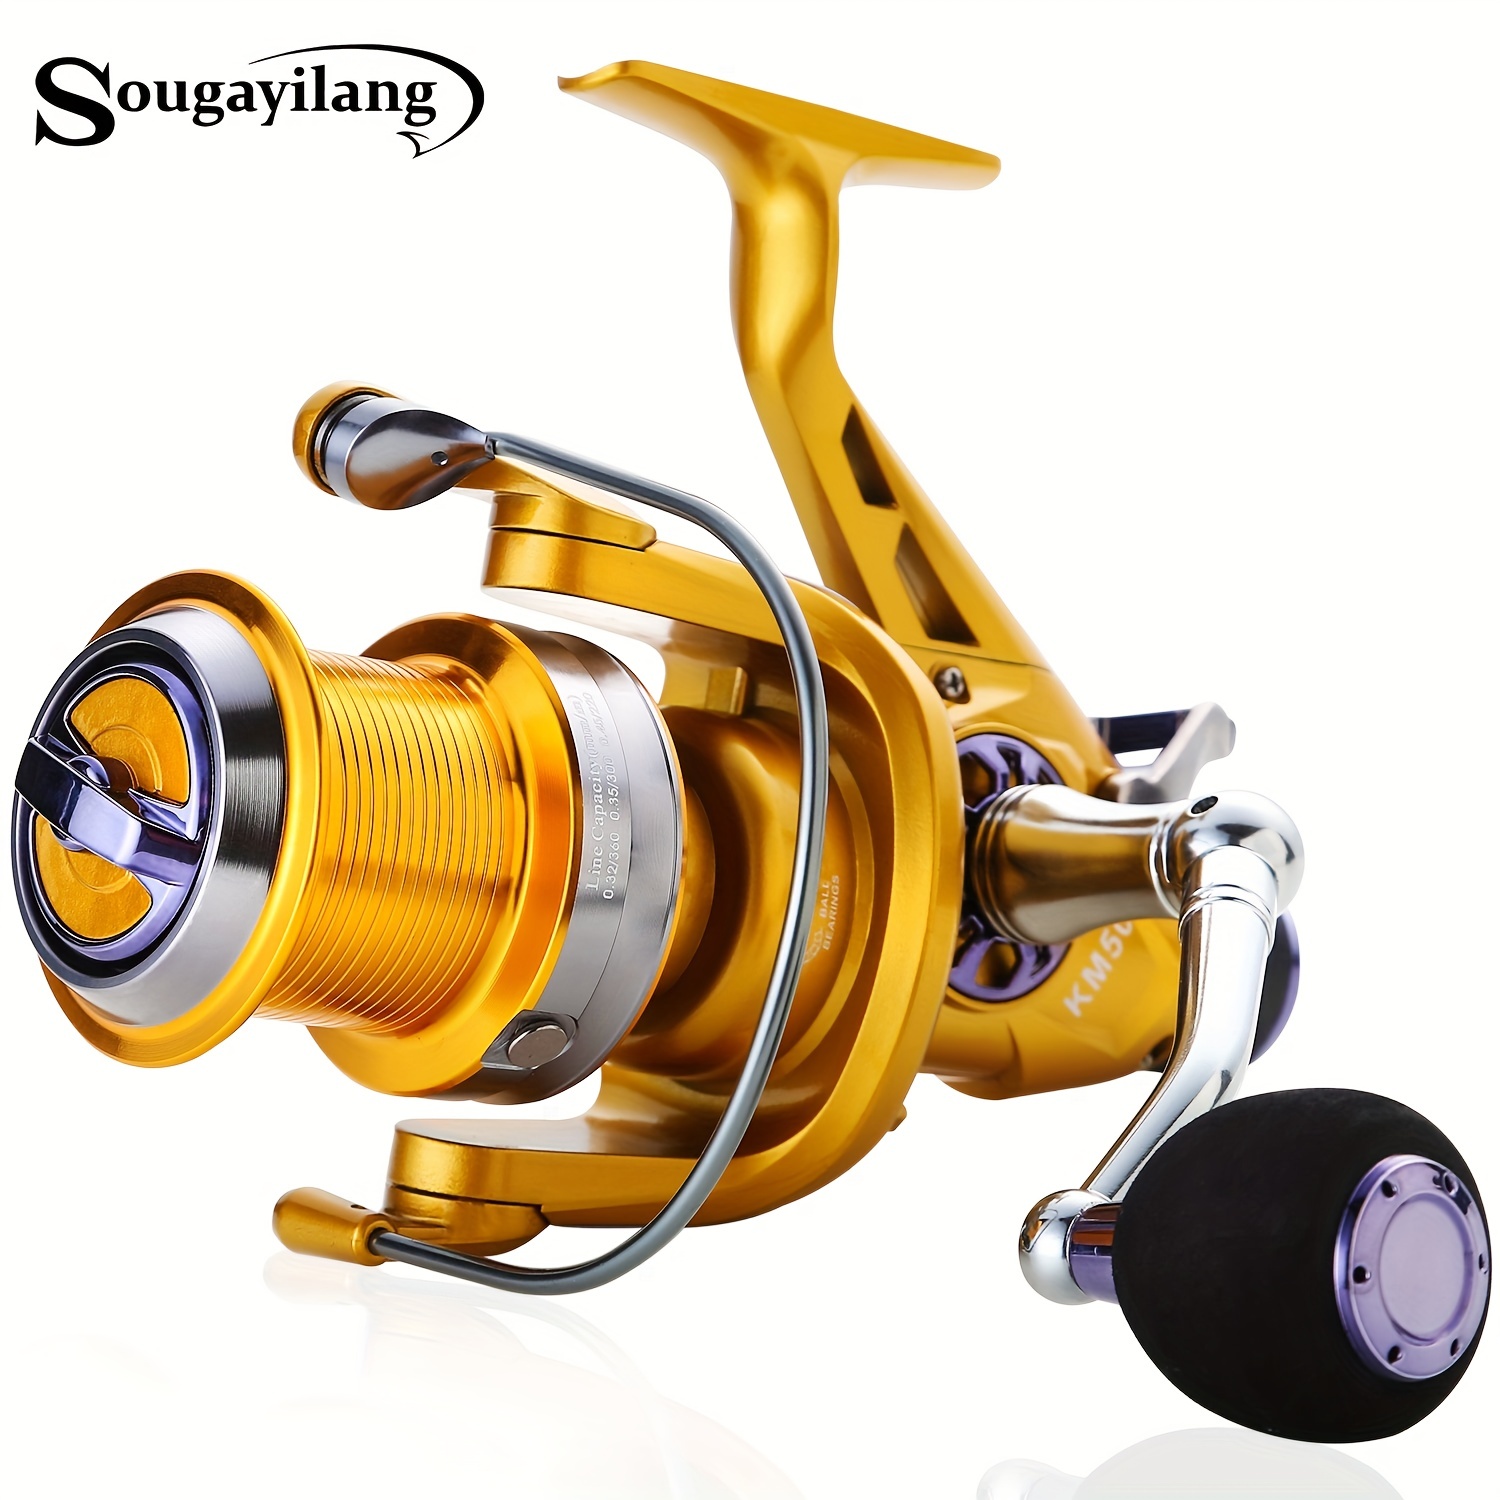 Sougayilang 10+1 Bb Spinning Fishing Reel Machine 5.2:1 High